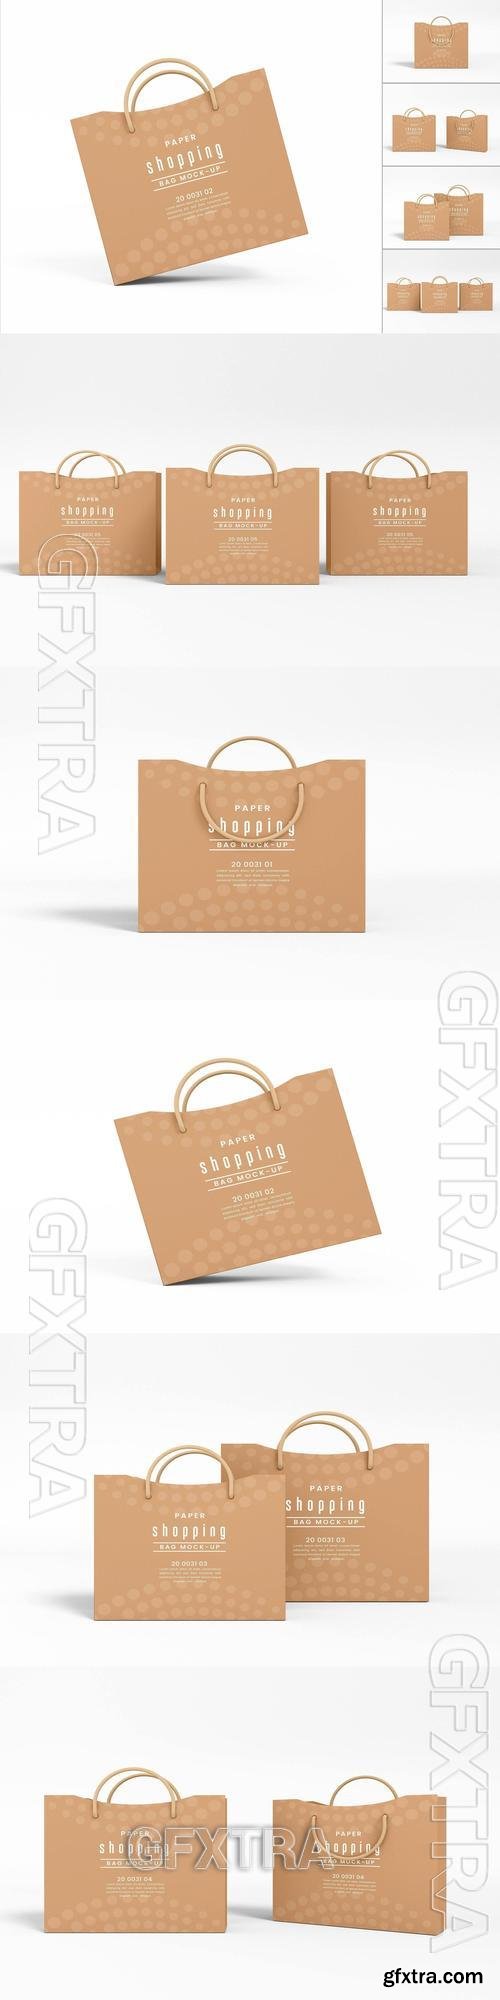 Kraft Paper Shopping Bag Branding Mockup Set G3J8WVY